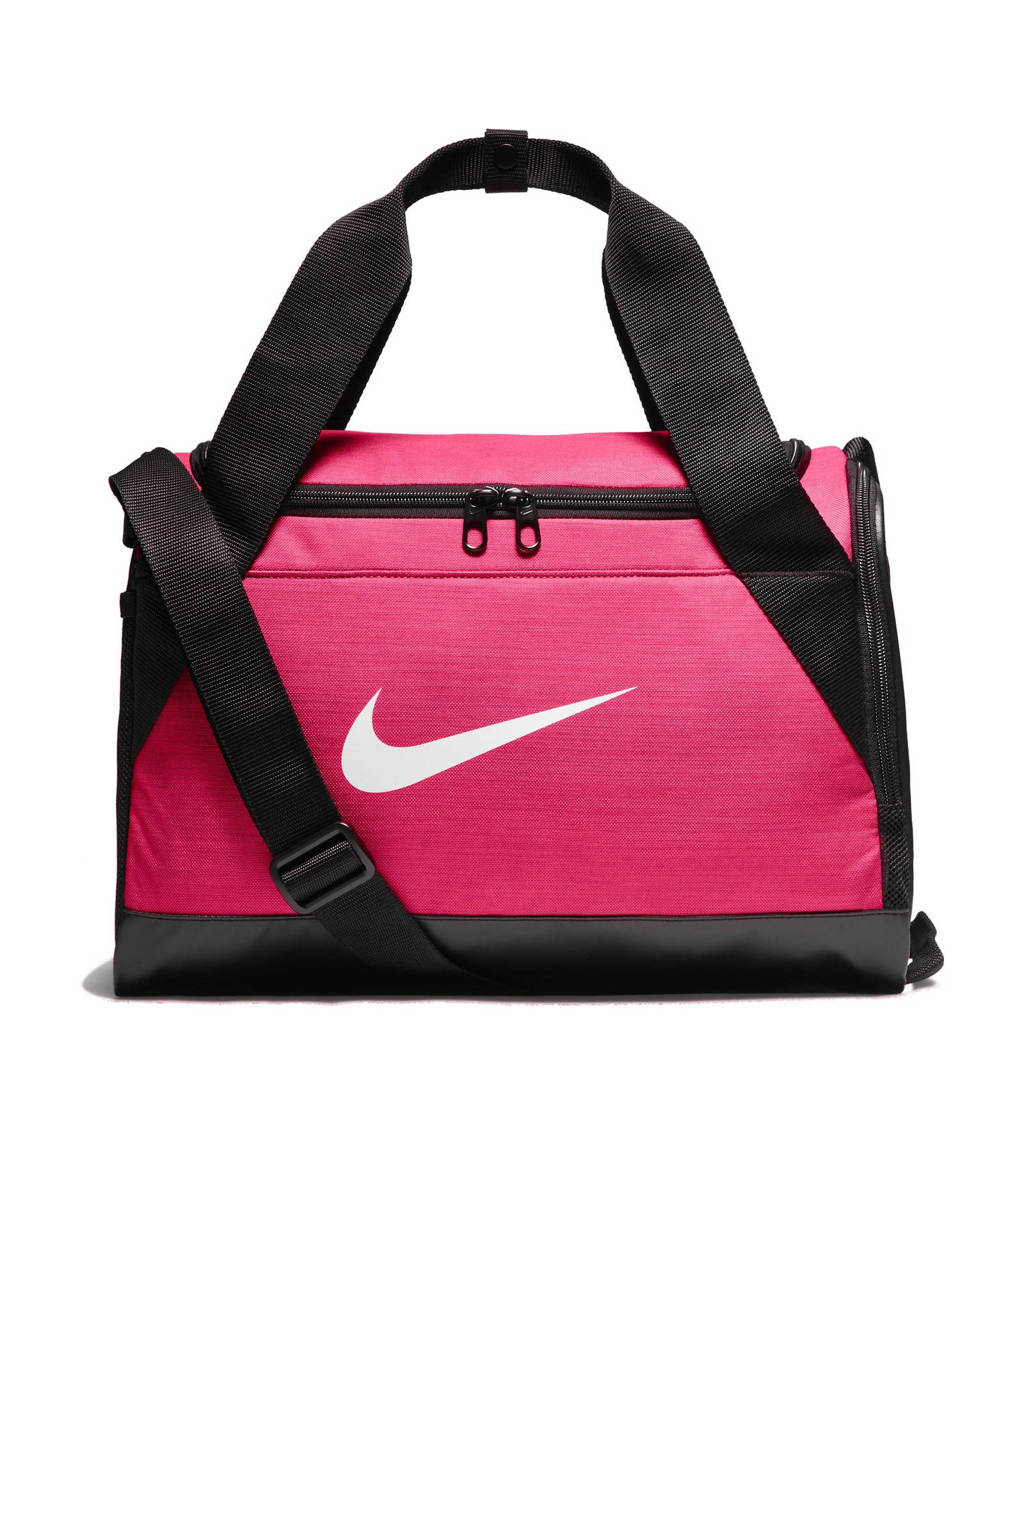 Nike sporttas Duffel roze |